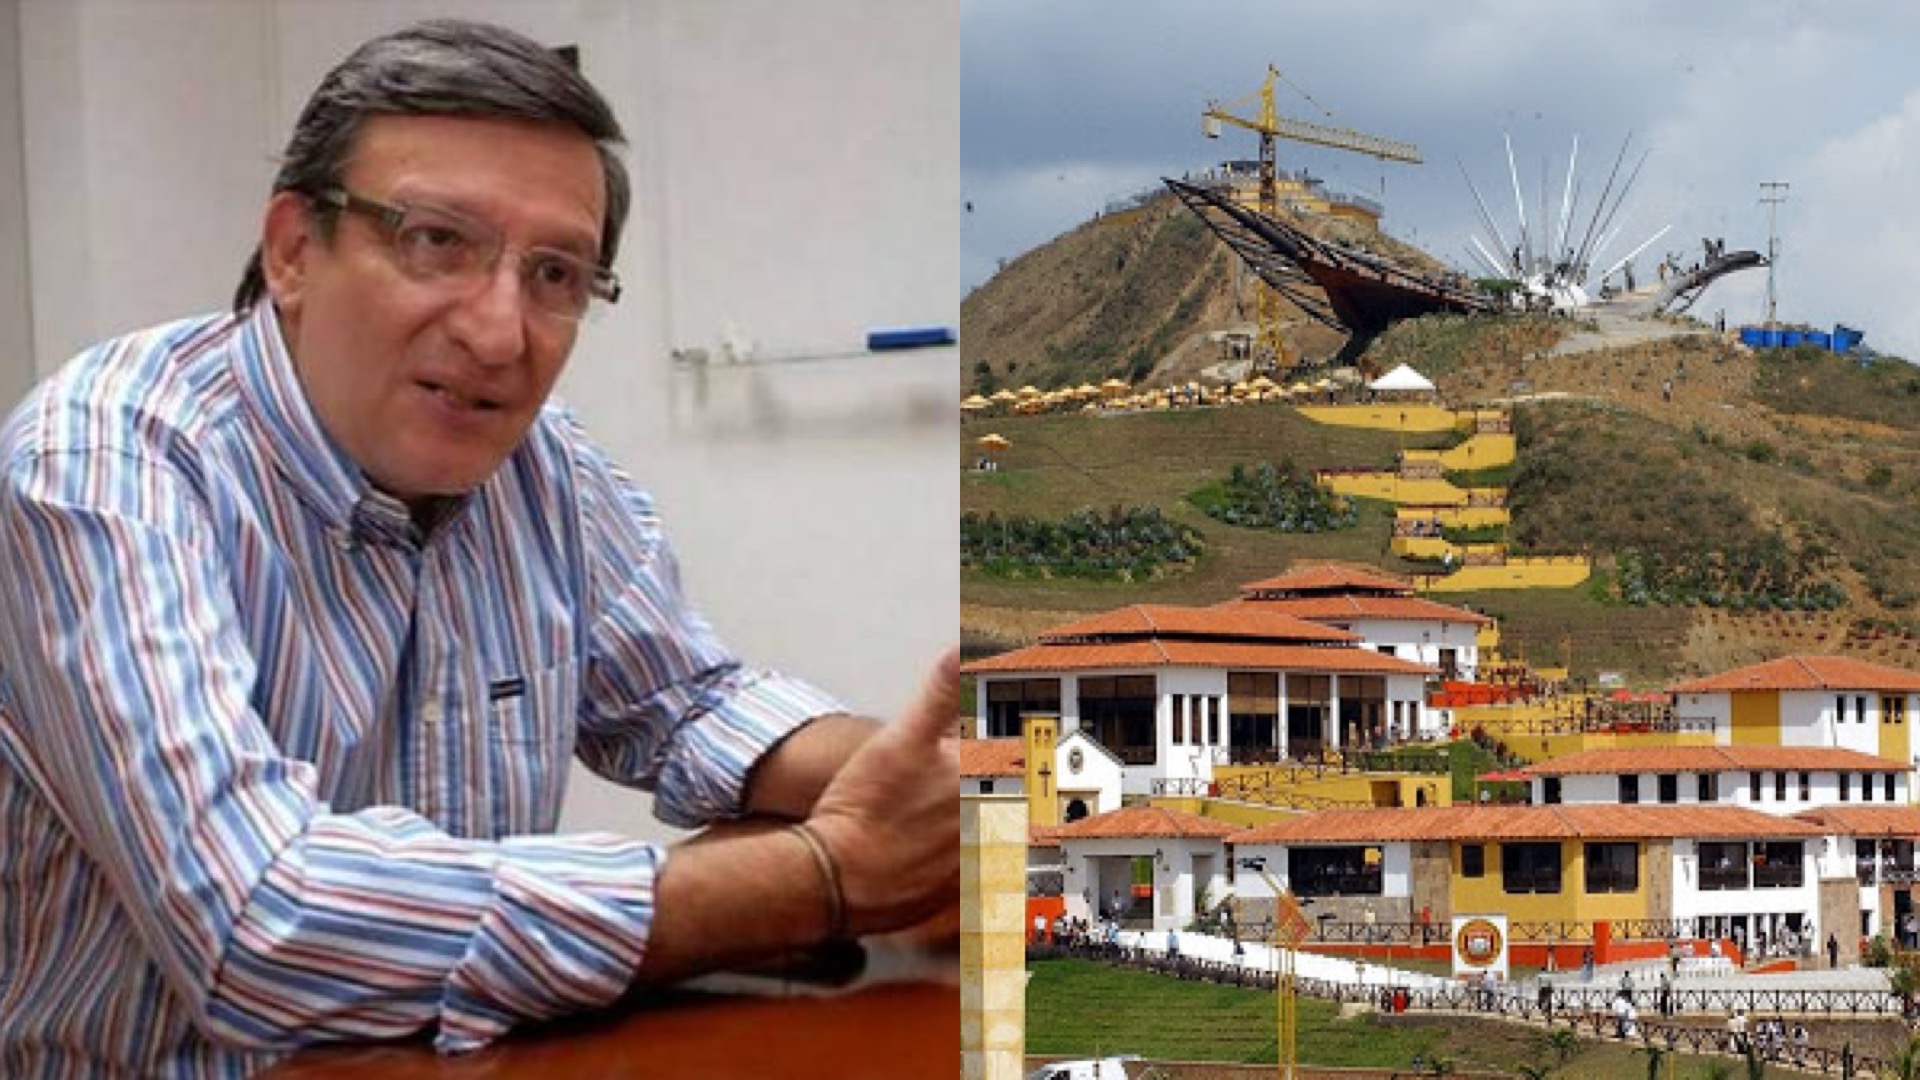 Por presuntas irregularidades administrativas al frente de la entidad, Carlos Fernando Sánchez fue destituido de la Corporación Parque Nacional del Chicamocha